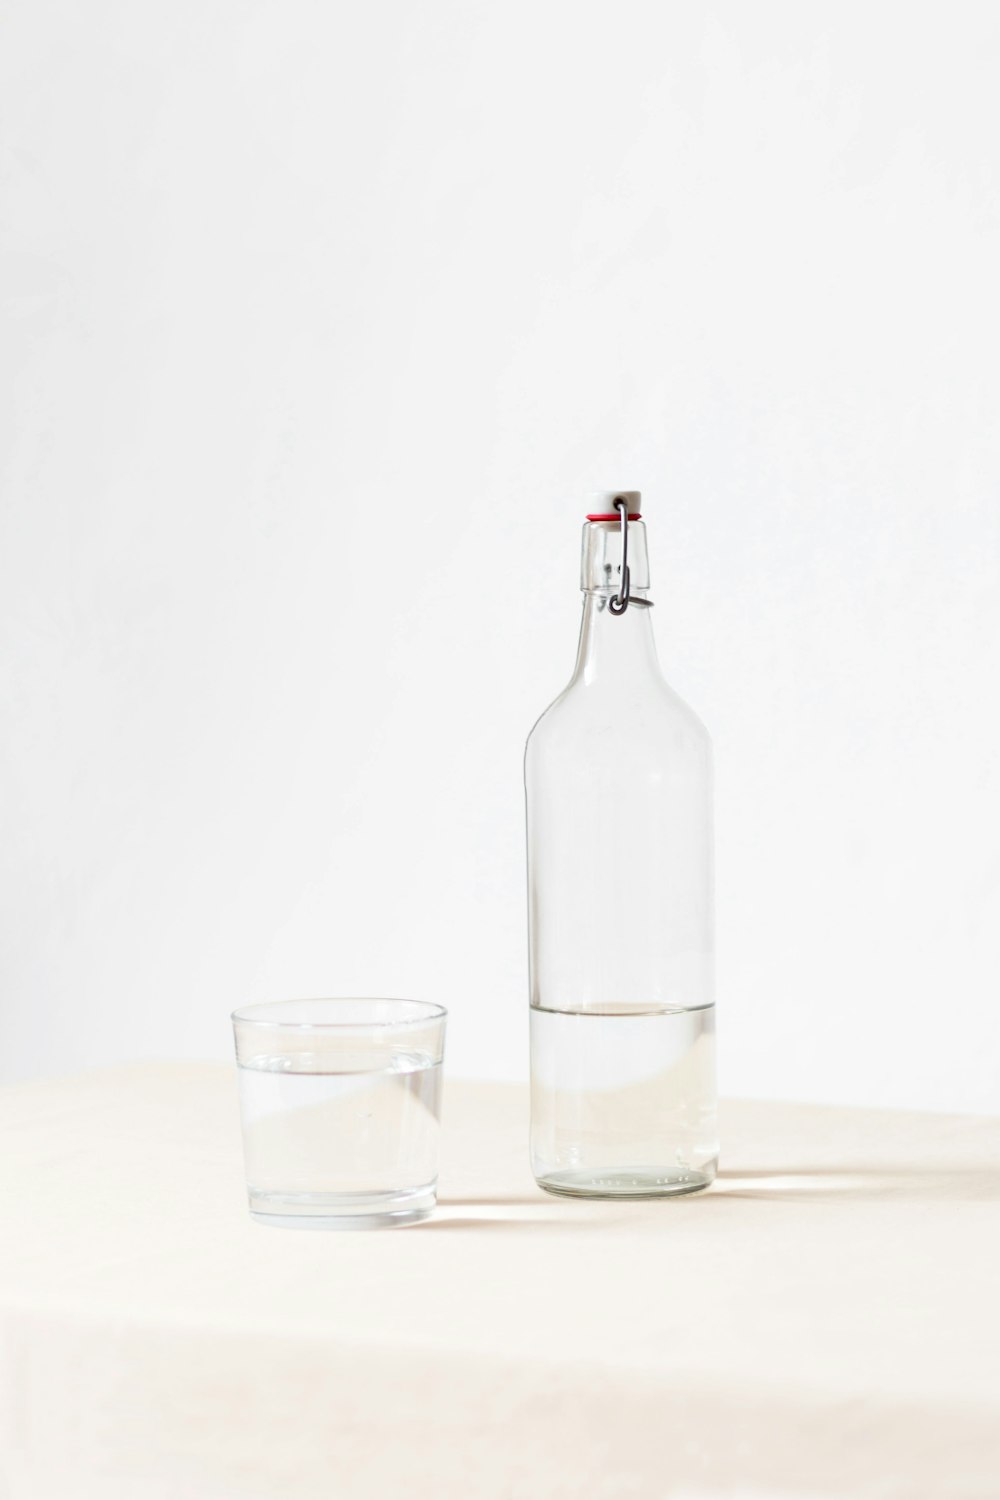 pedras de vidro ao lado de garrafa meio vazia na superfície branca